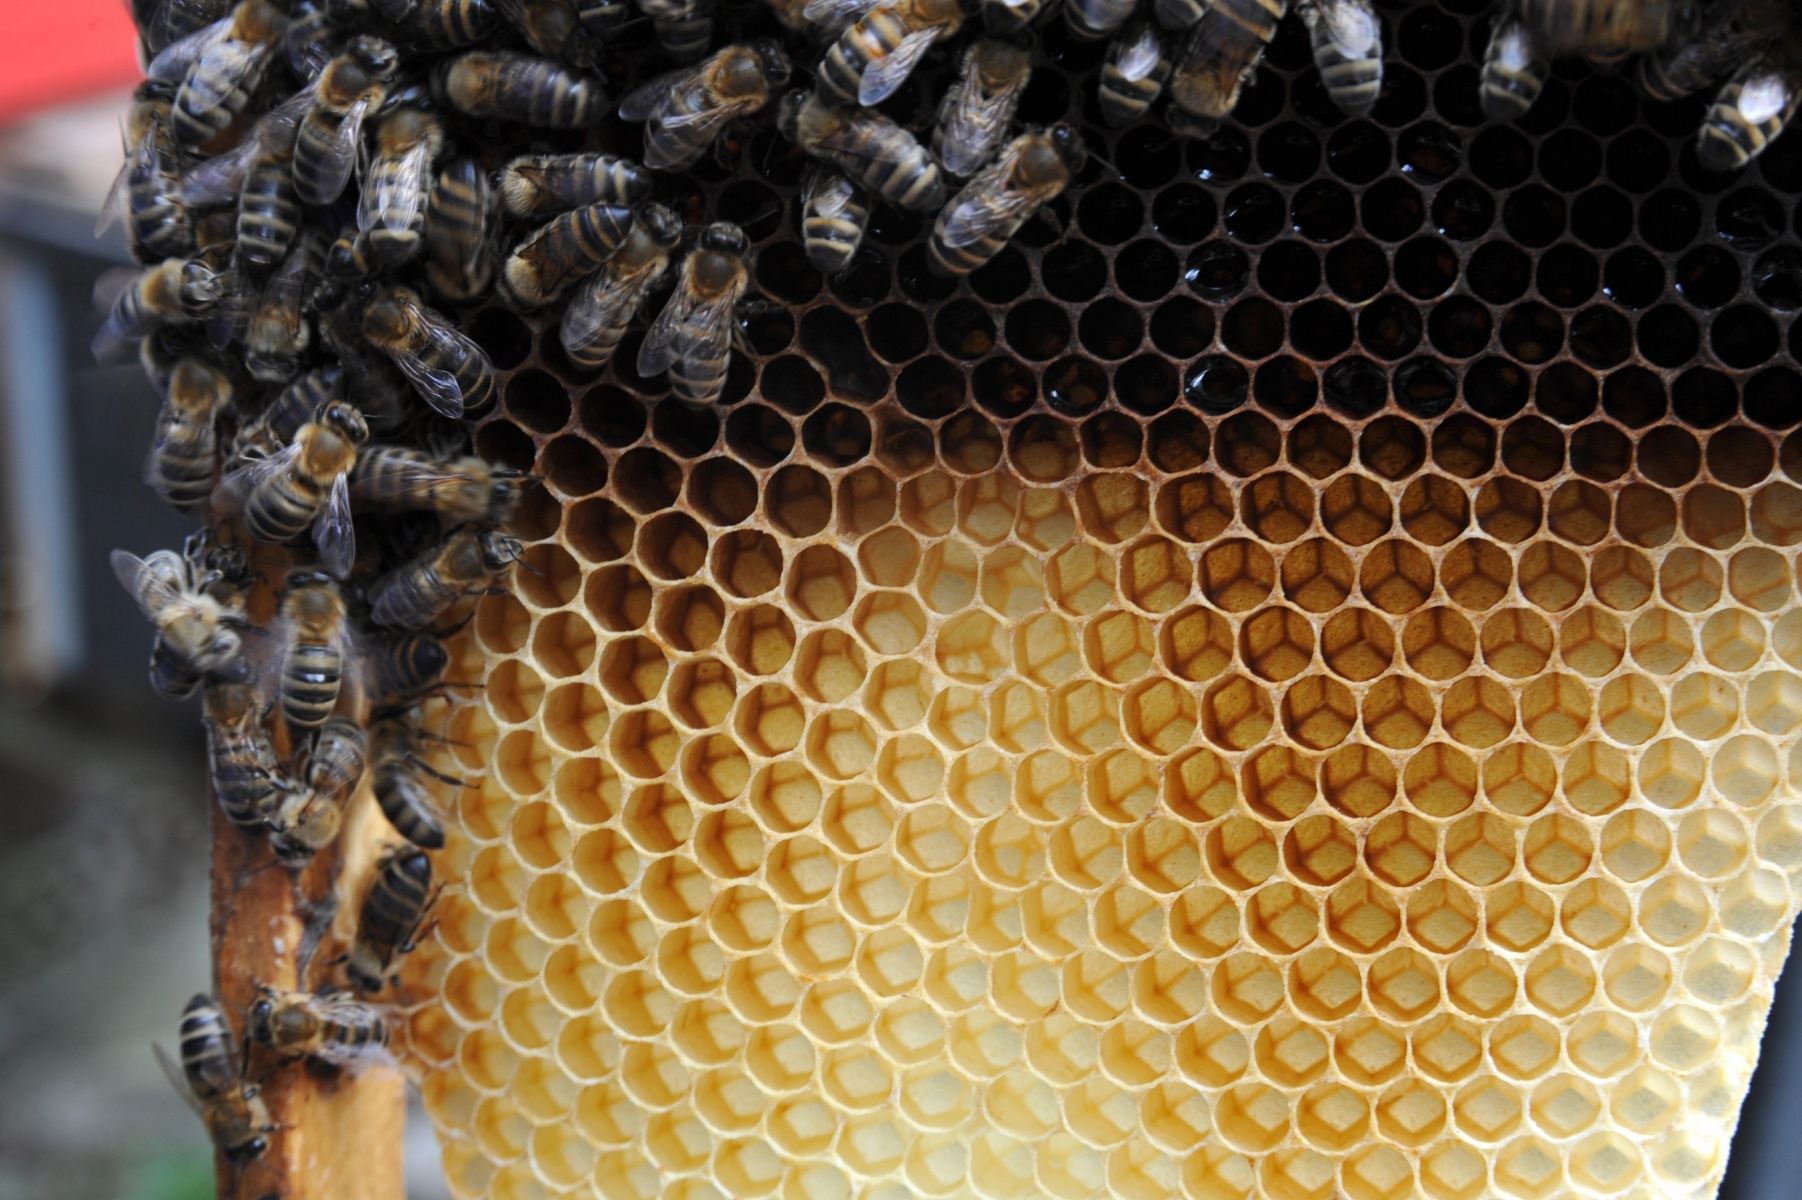 La desertion des abeilles touche la moitie des ruchers. Ici le president de la federation cantonale neuchateloise des apiculteurs Didier  Gigon dans son rucher aux abords du Noirmont. ici avec une ruche en bon etat

Le Noirmont le 14 avril 2010

Photo R Leuenberger APICULTEURS NEUCHATELOIS